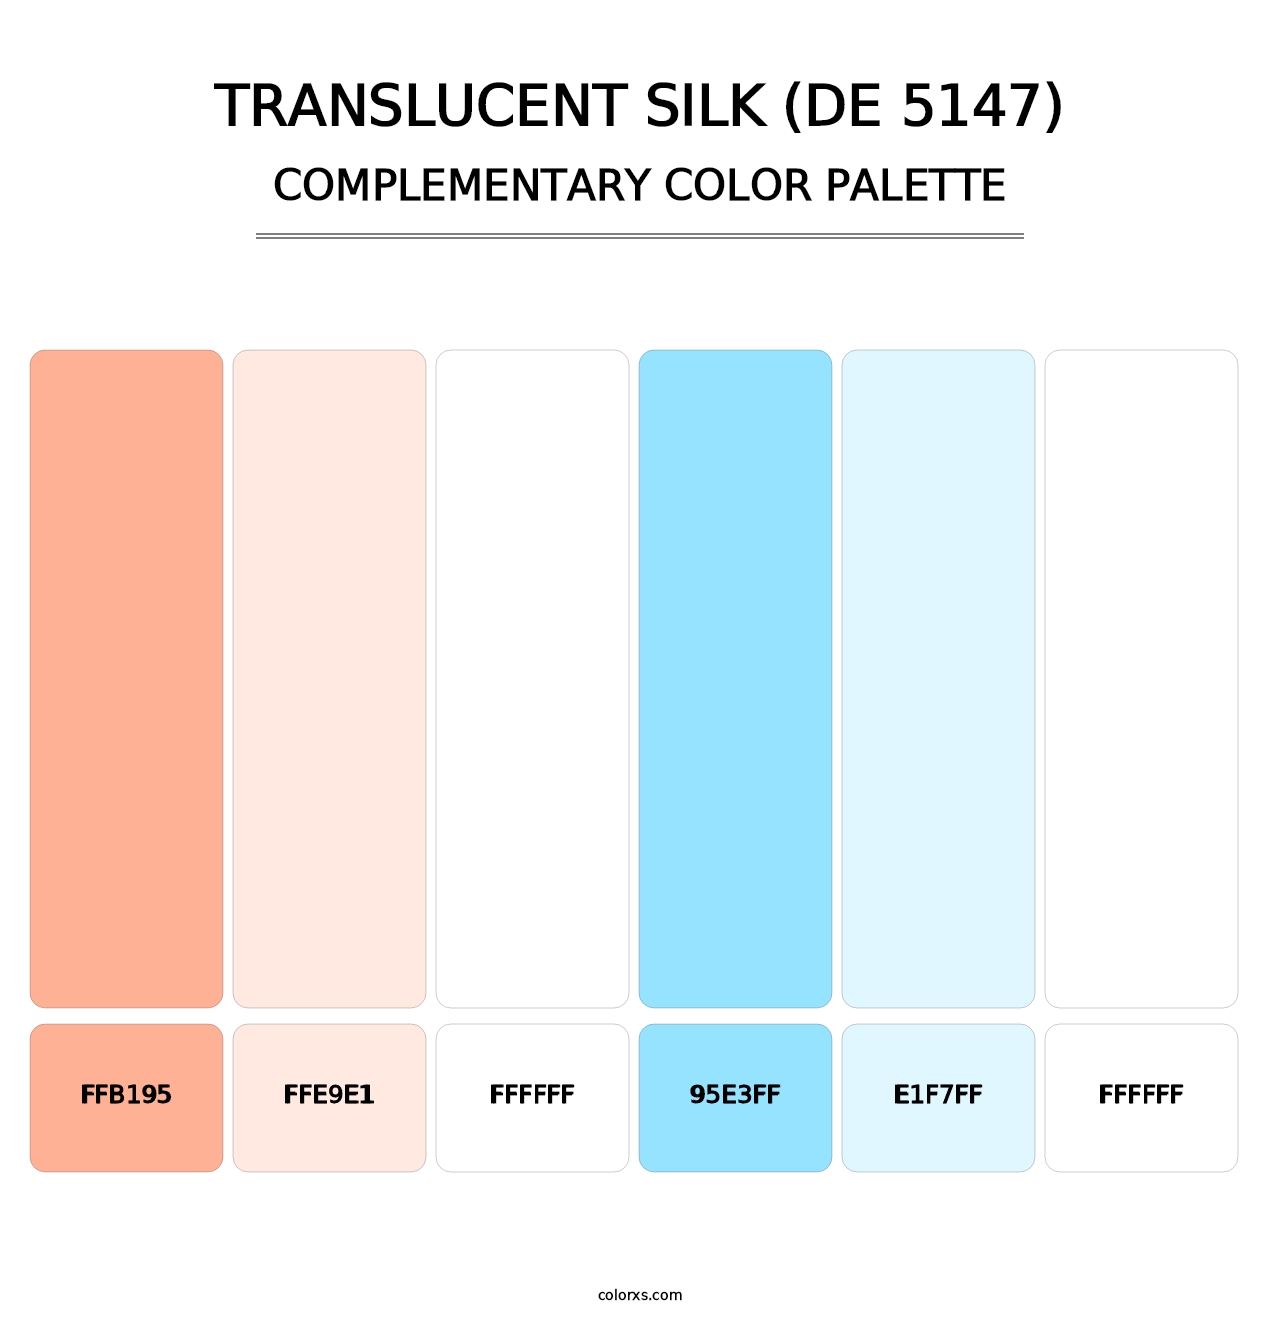 Translucent Silk (DE 5147) - Complementary Color Palette